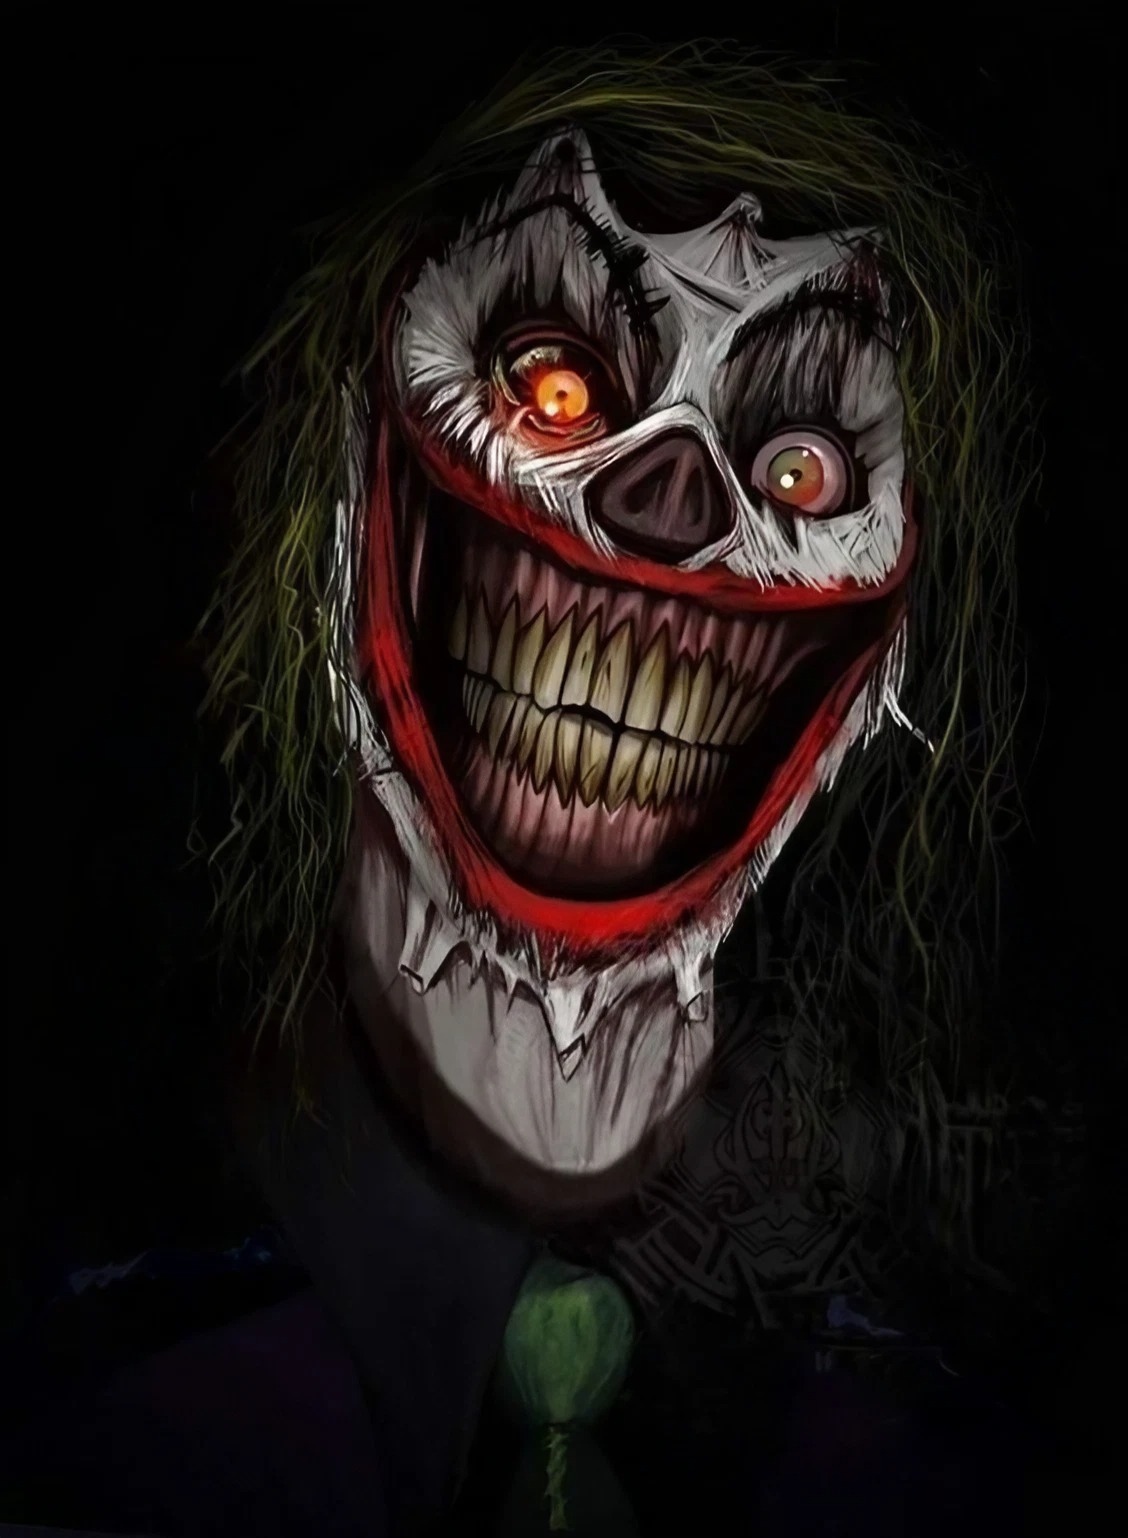 Danger Joker - Scary Joker Face